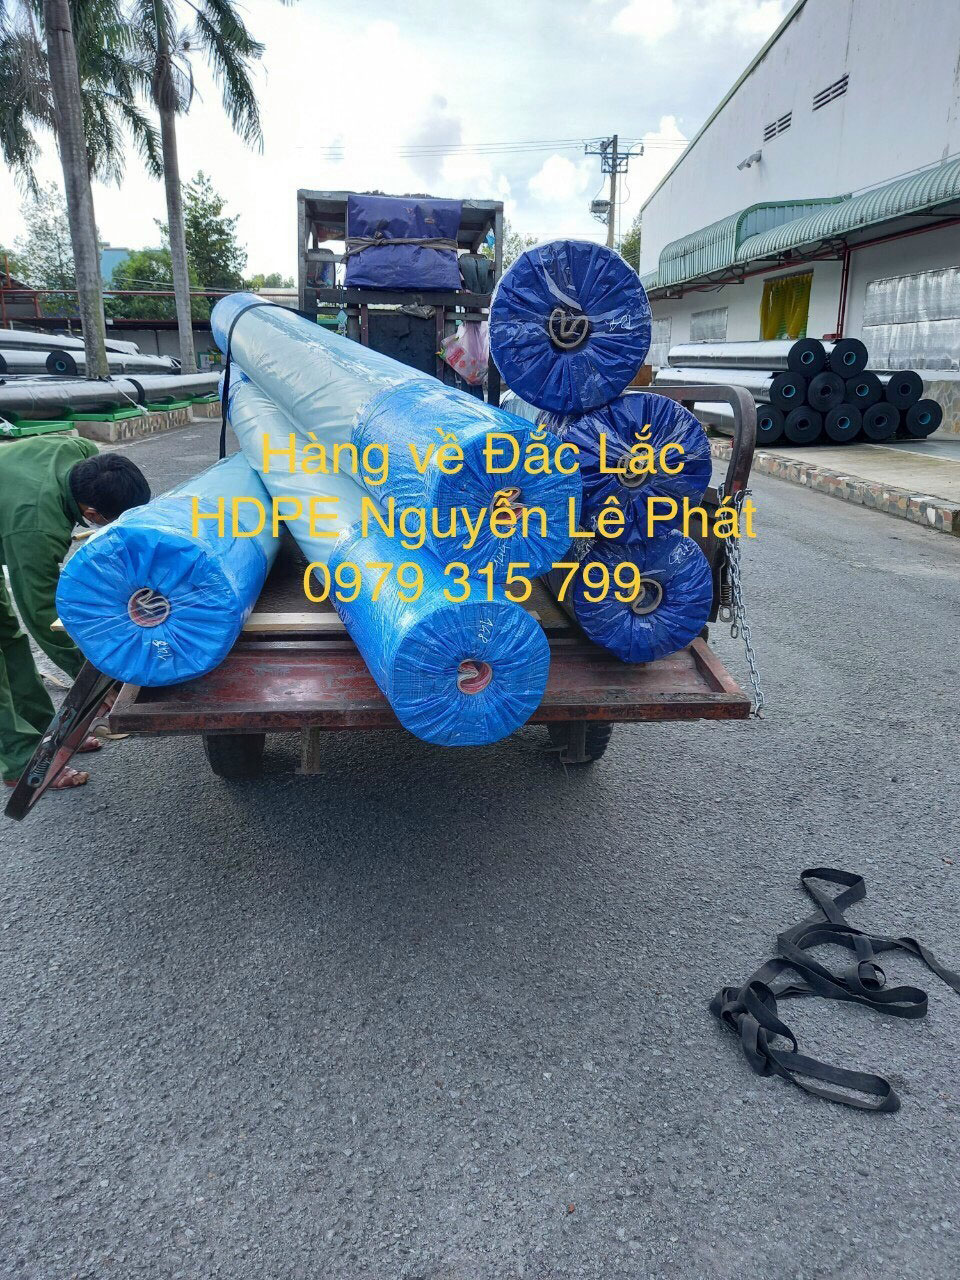 Báo giá bán bạt lót ao hồ chứa nước tại Long Thành Đồng Nai giá rẻ